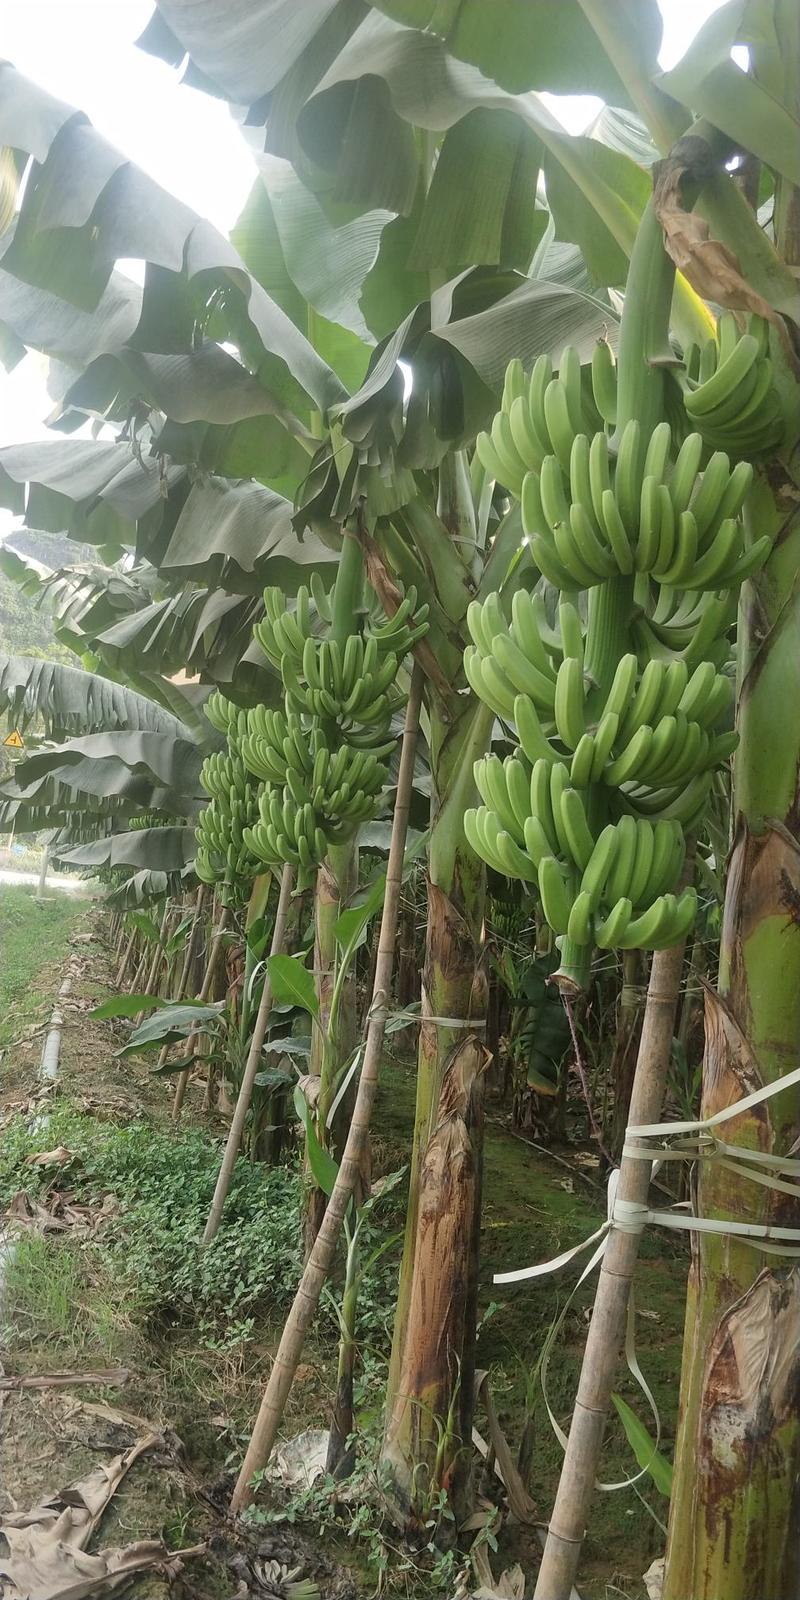 【苗圃直发】香蕉苗广西红香蕉苗专业技术培育欢迎选购